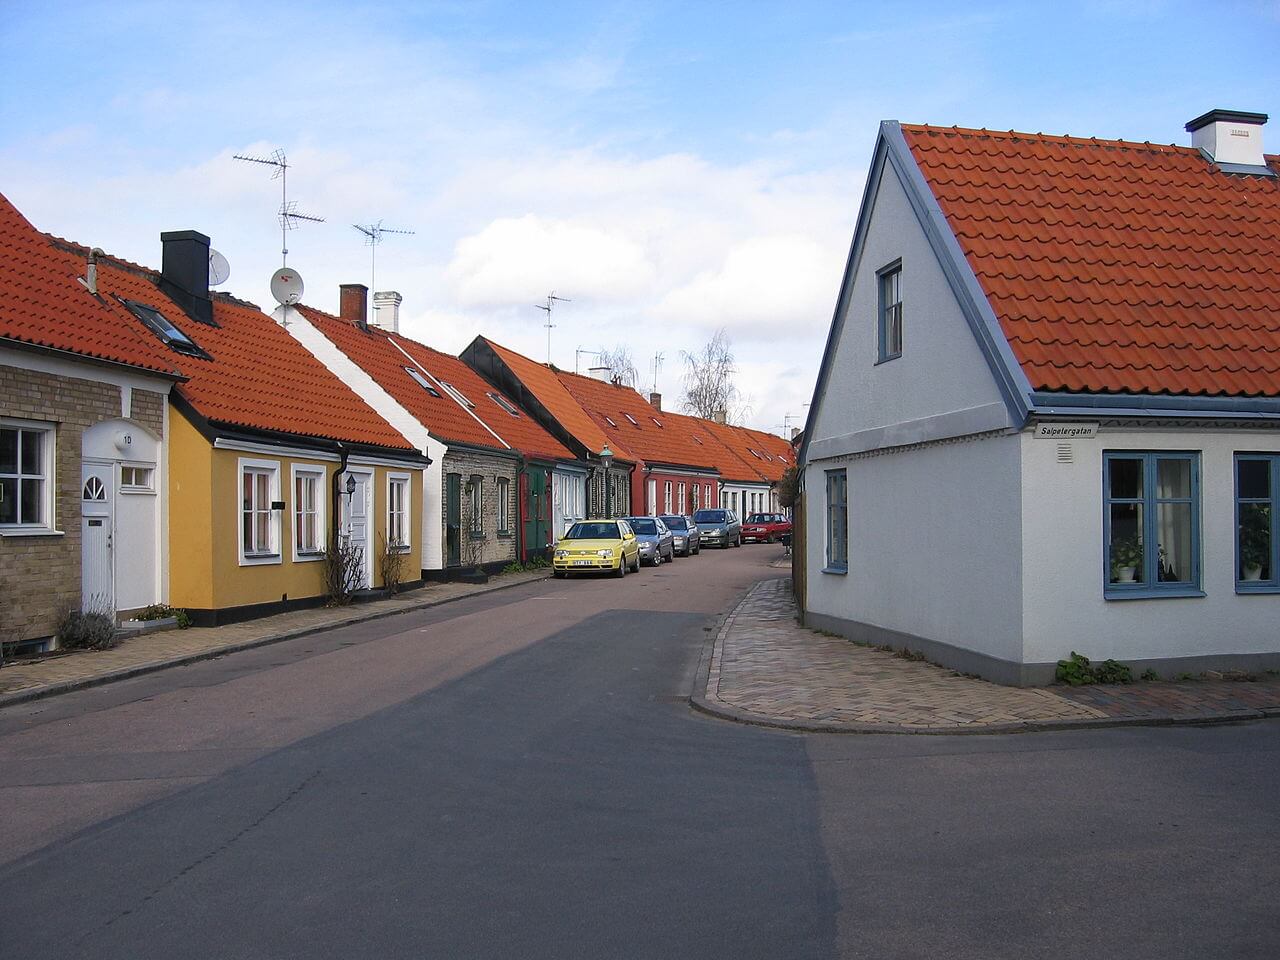 landskrona